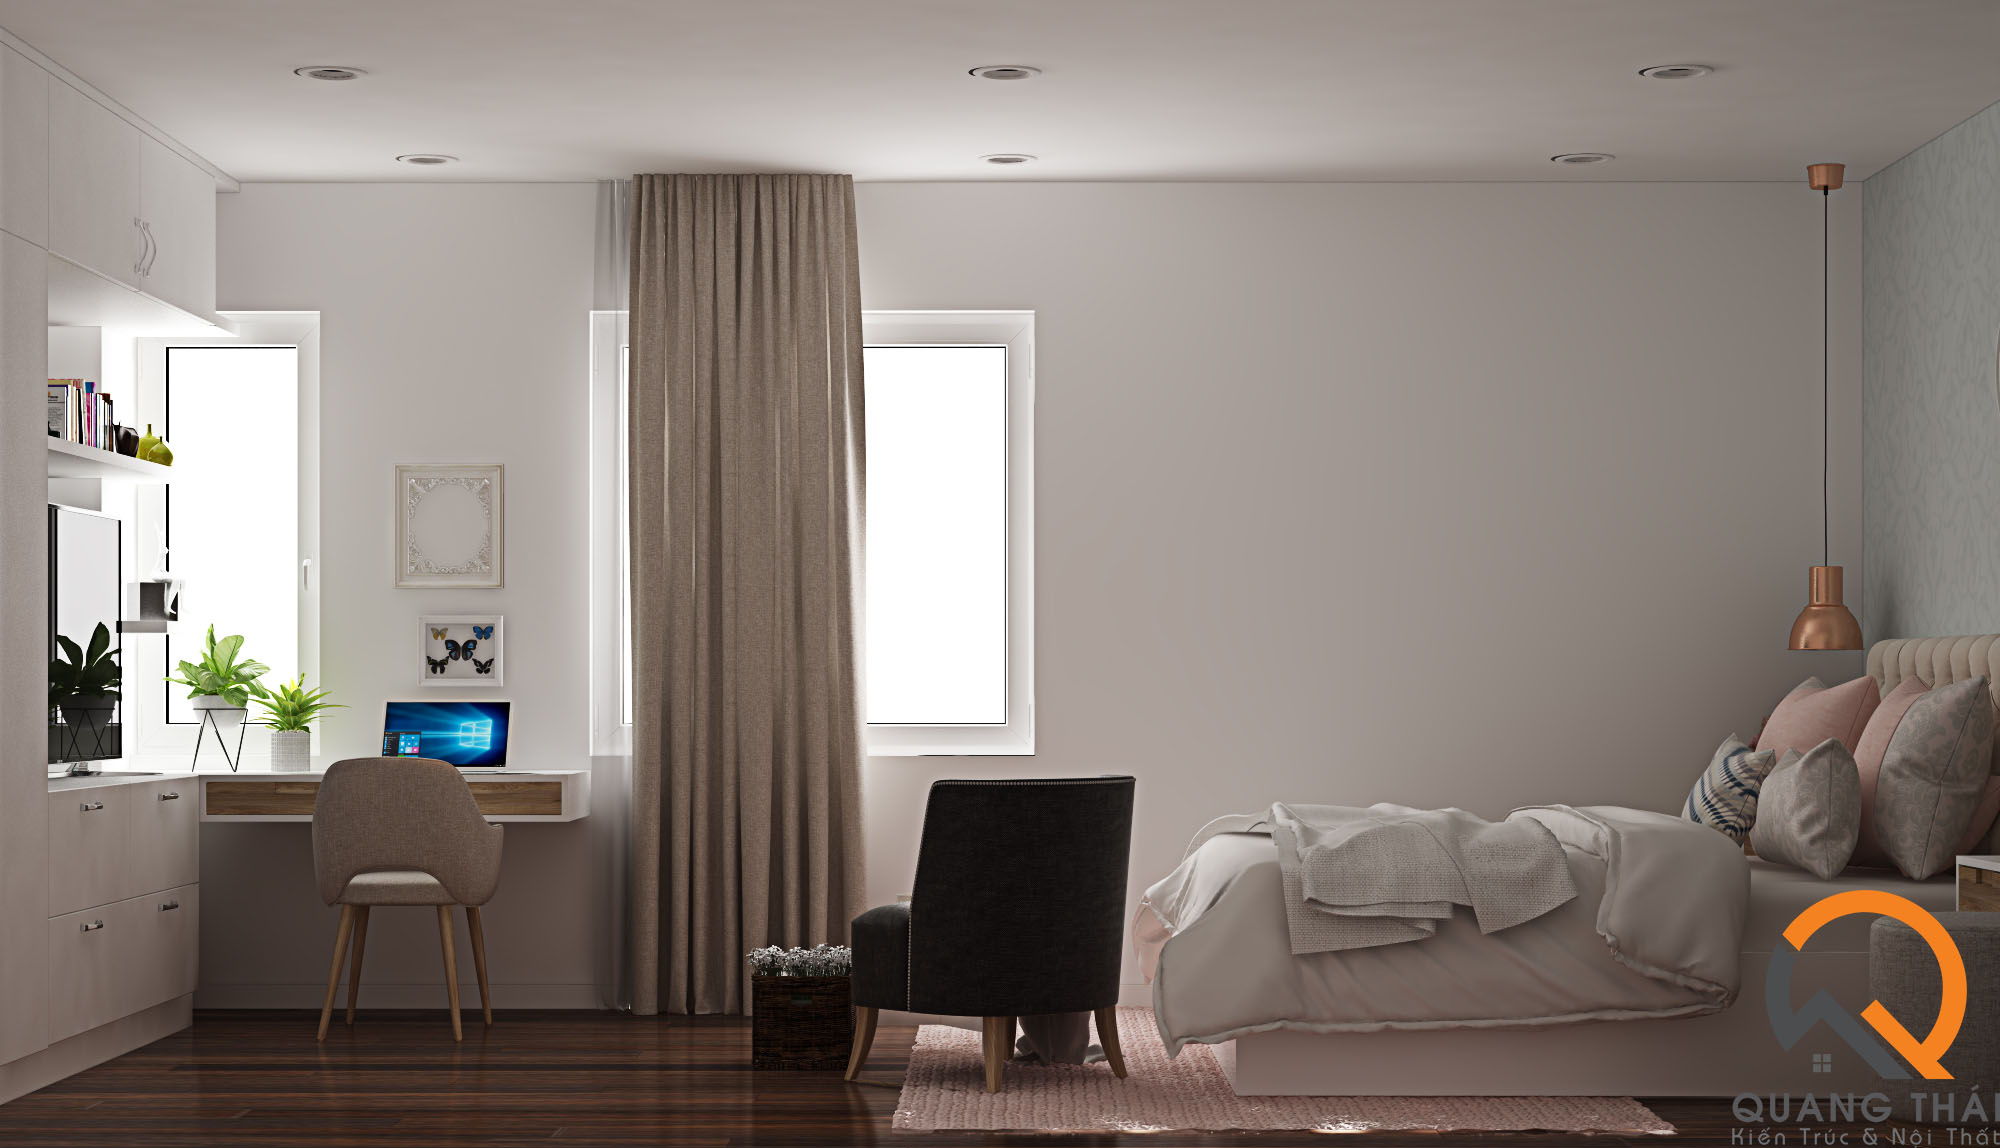 Nội thất phòng ngủ hiện đại, sang trọng, với tông màu trắng nhẹ nhàng thuần khiết.